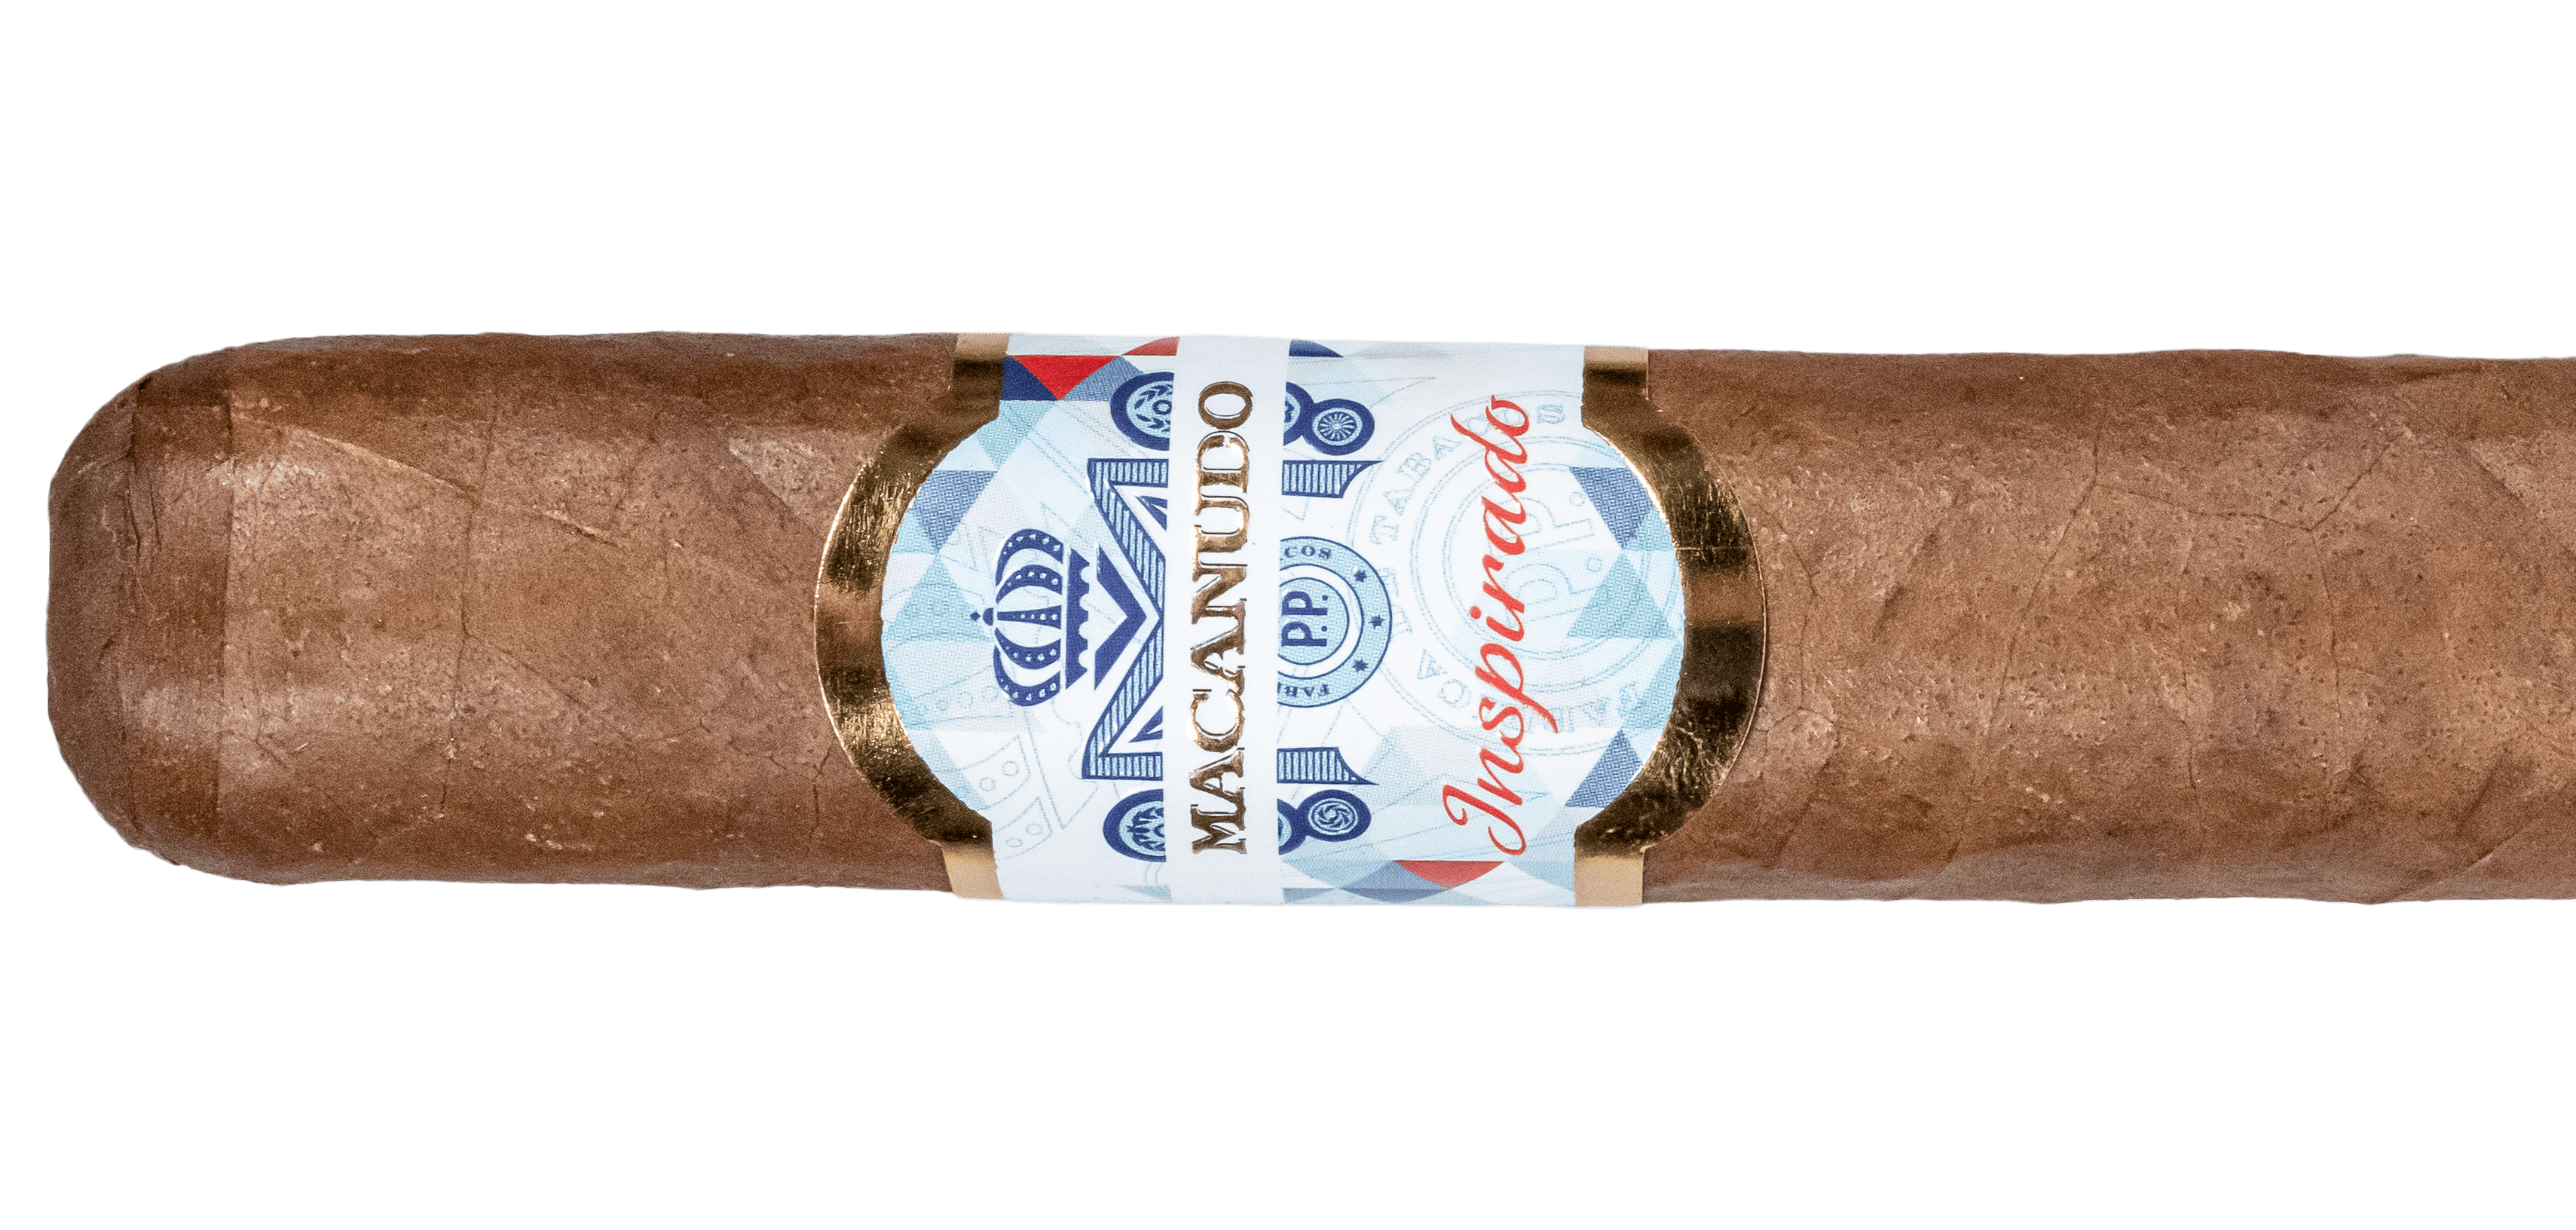 Macanudo Inspirado Jamao Toro - Blind Cigar Review